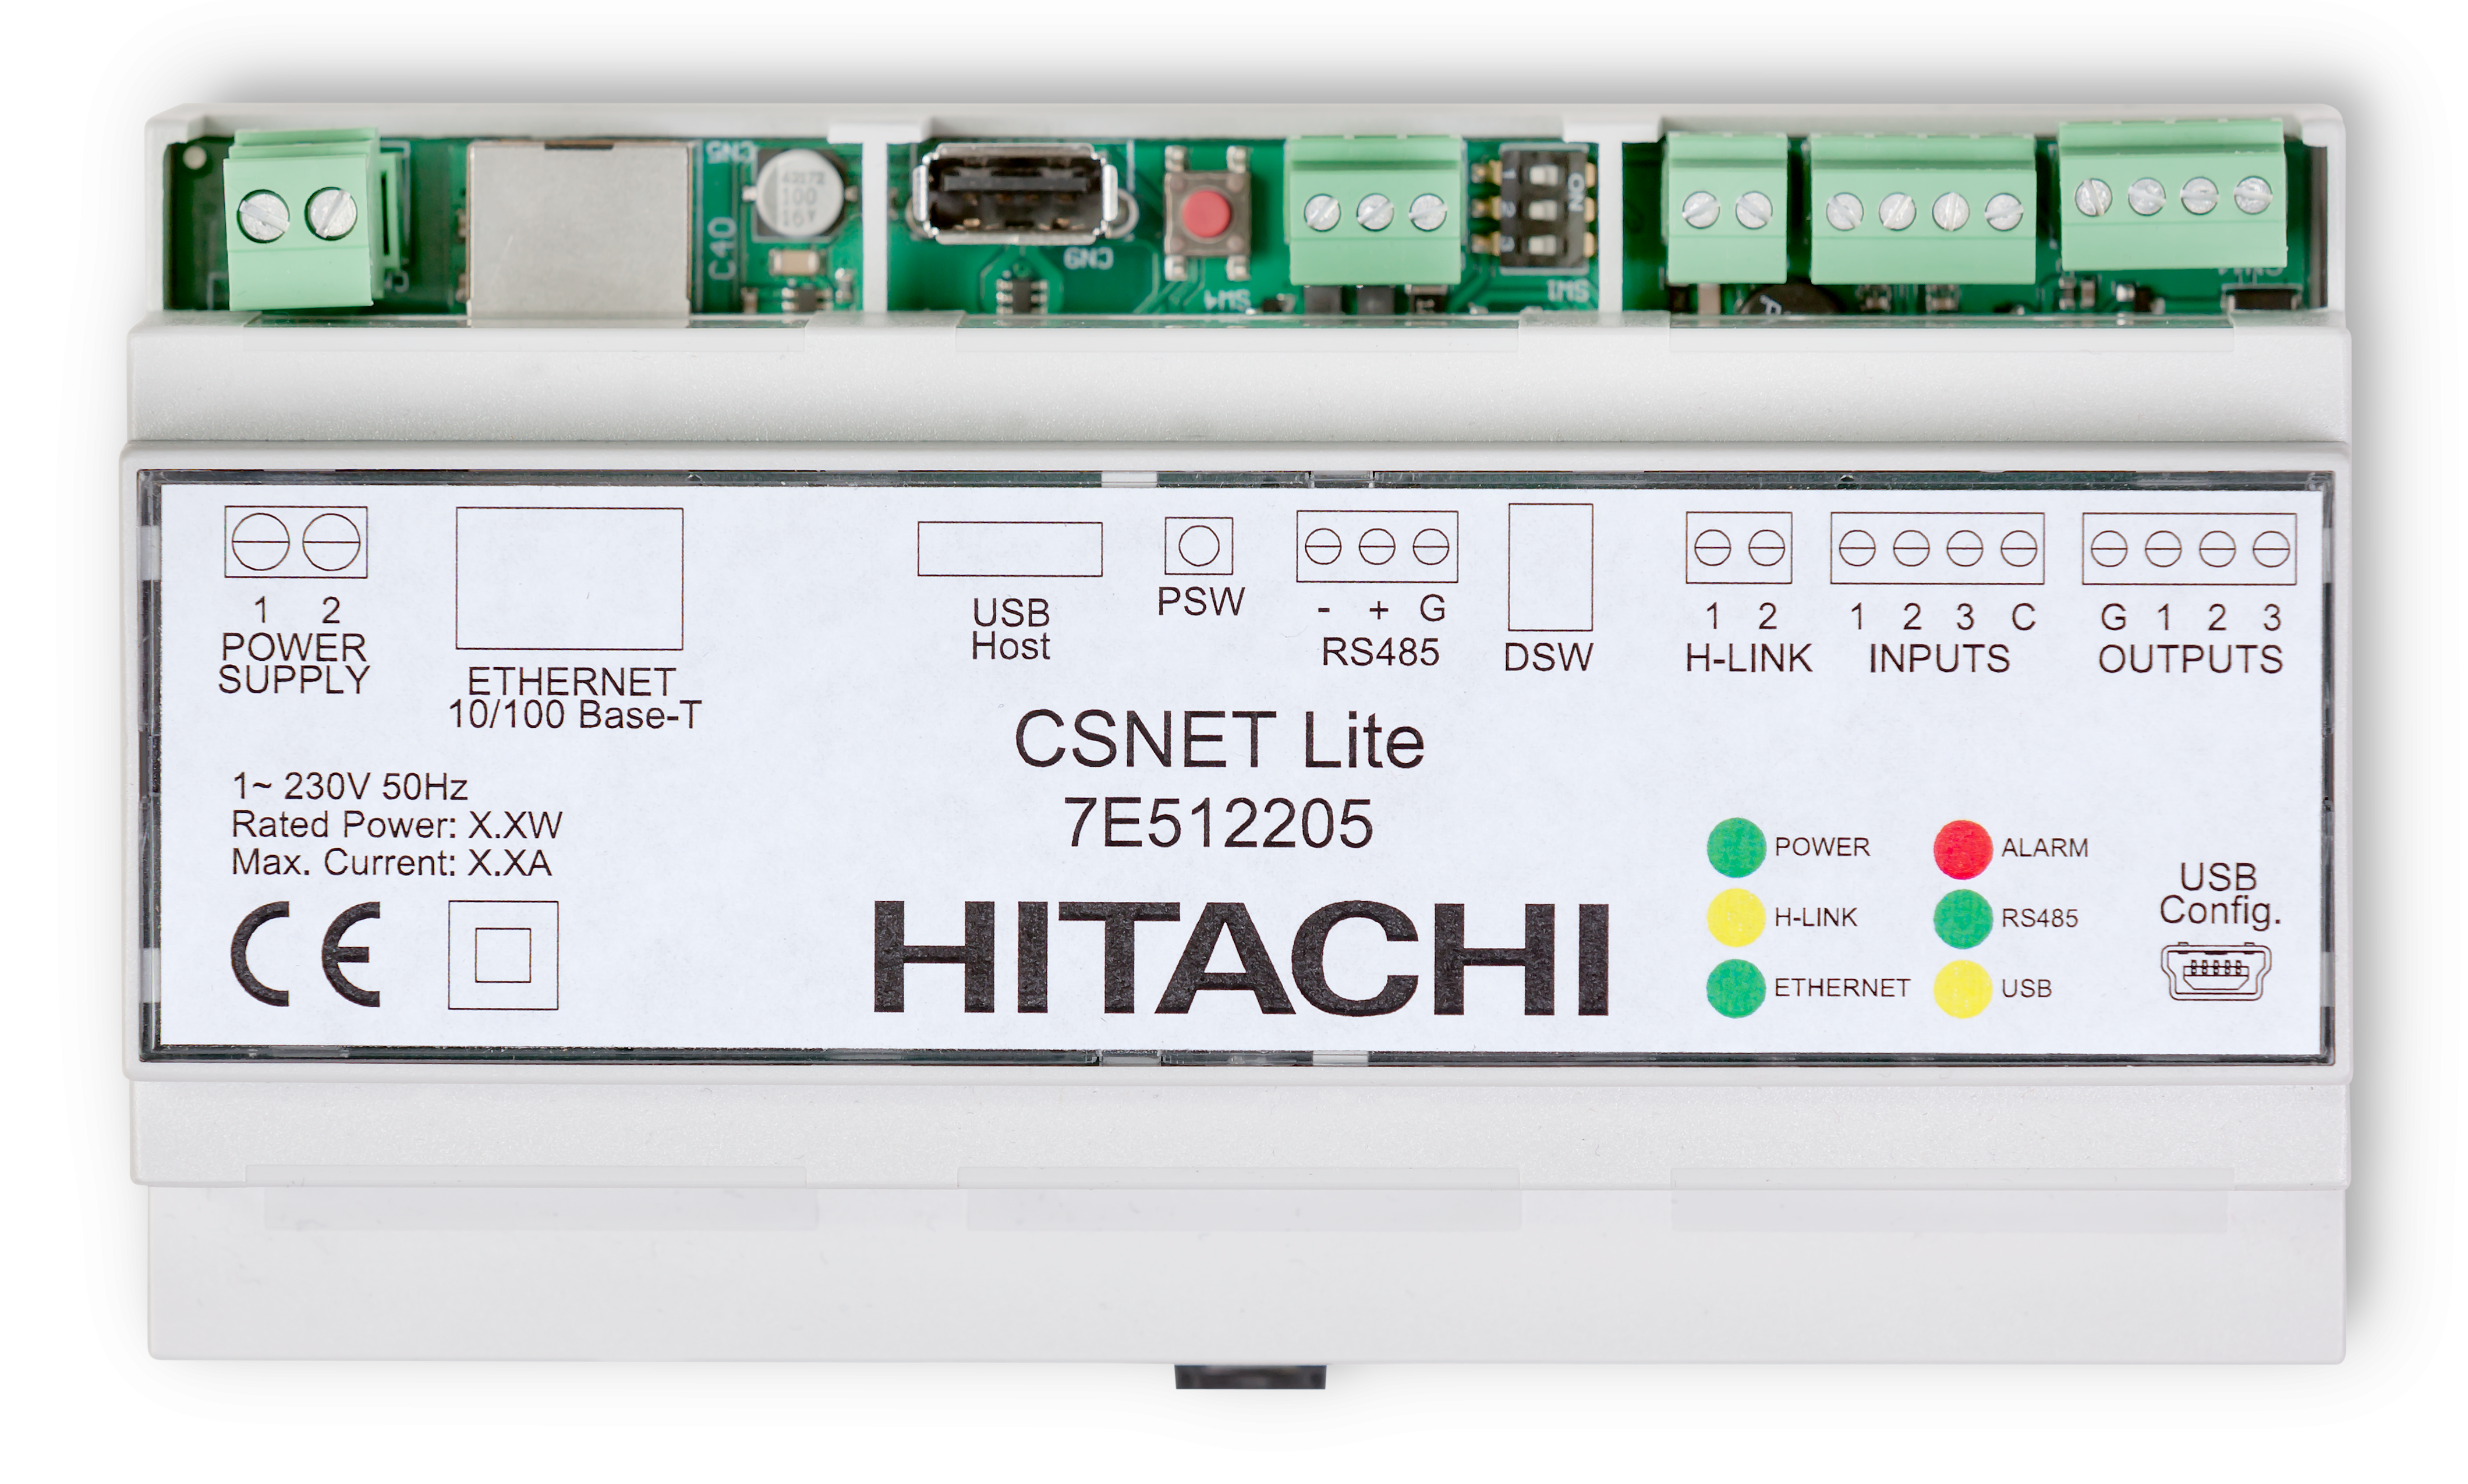 Hitachi CS_Net Lite CS-Net Manager 2